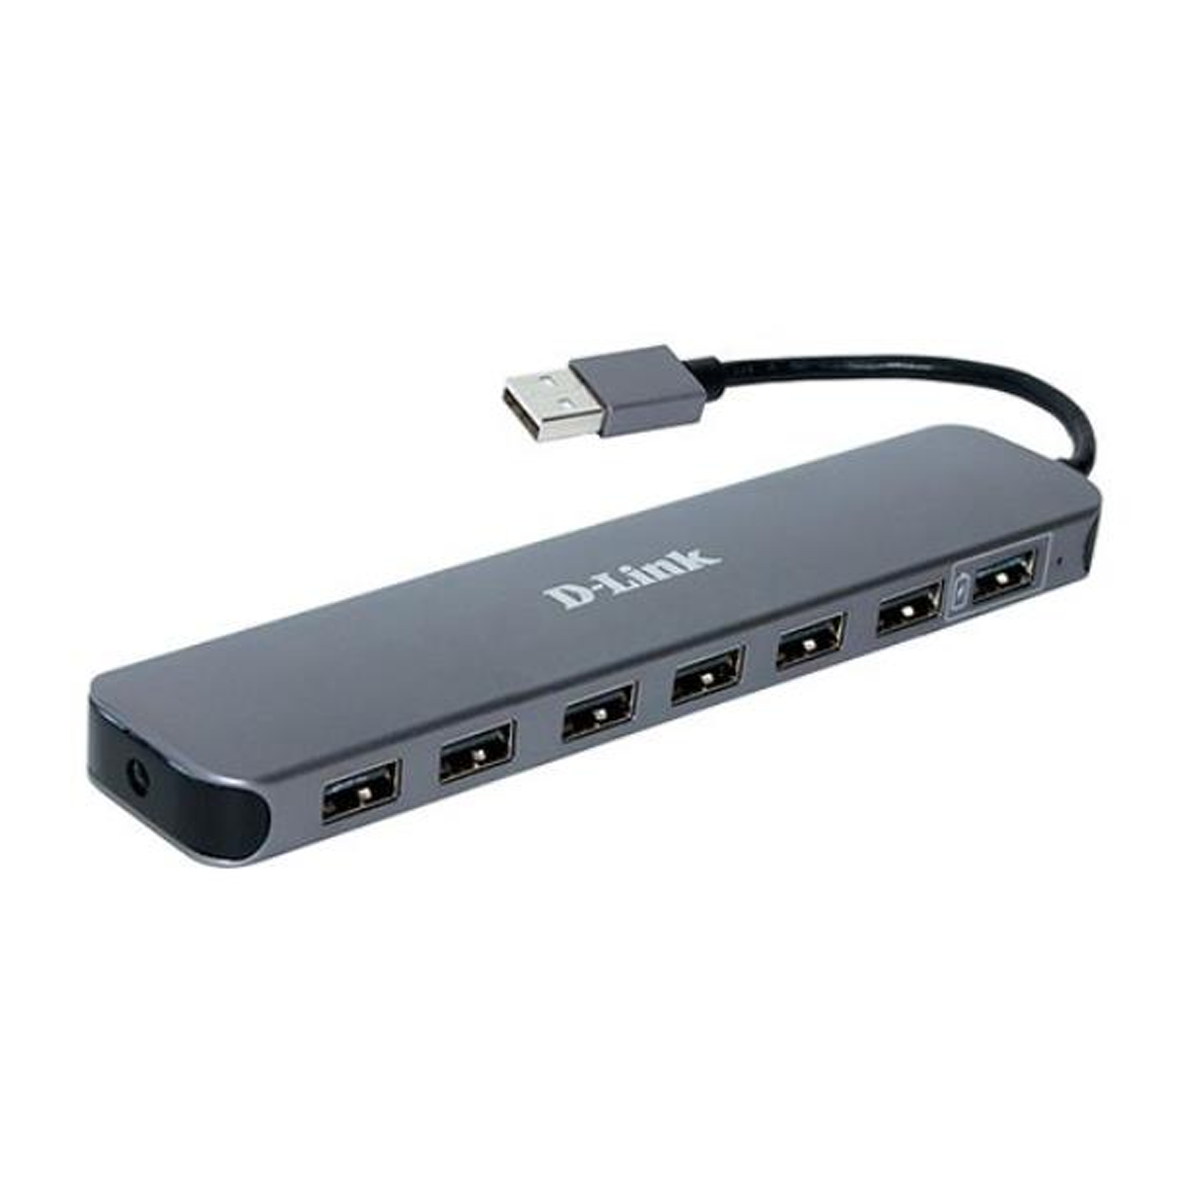 هاب USB دی لینک 7 پورت مدل DUB-H7-خاکستری